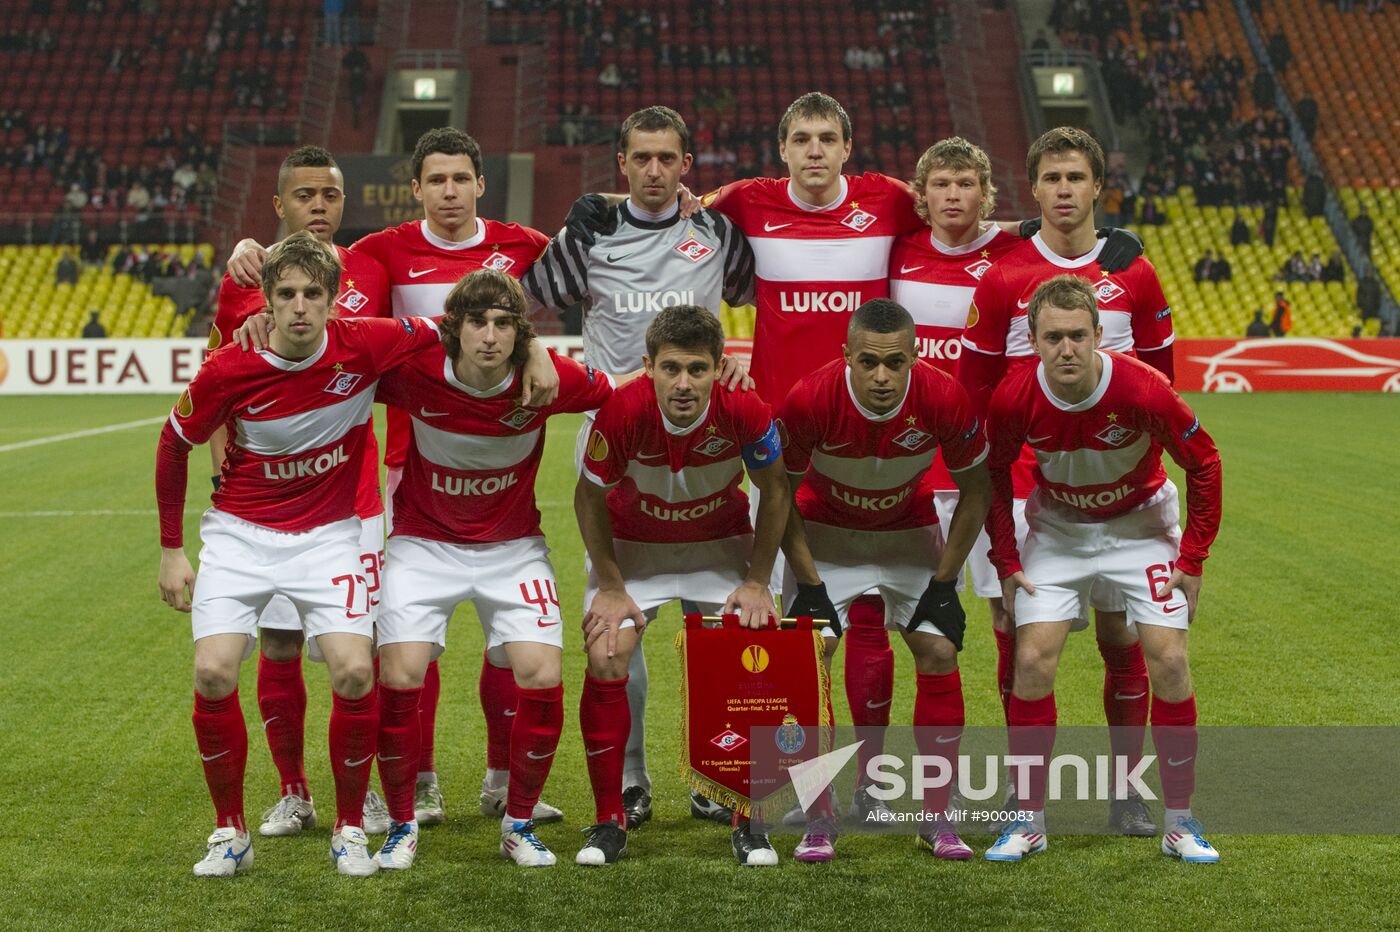 Spartak squad